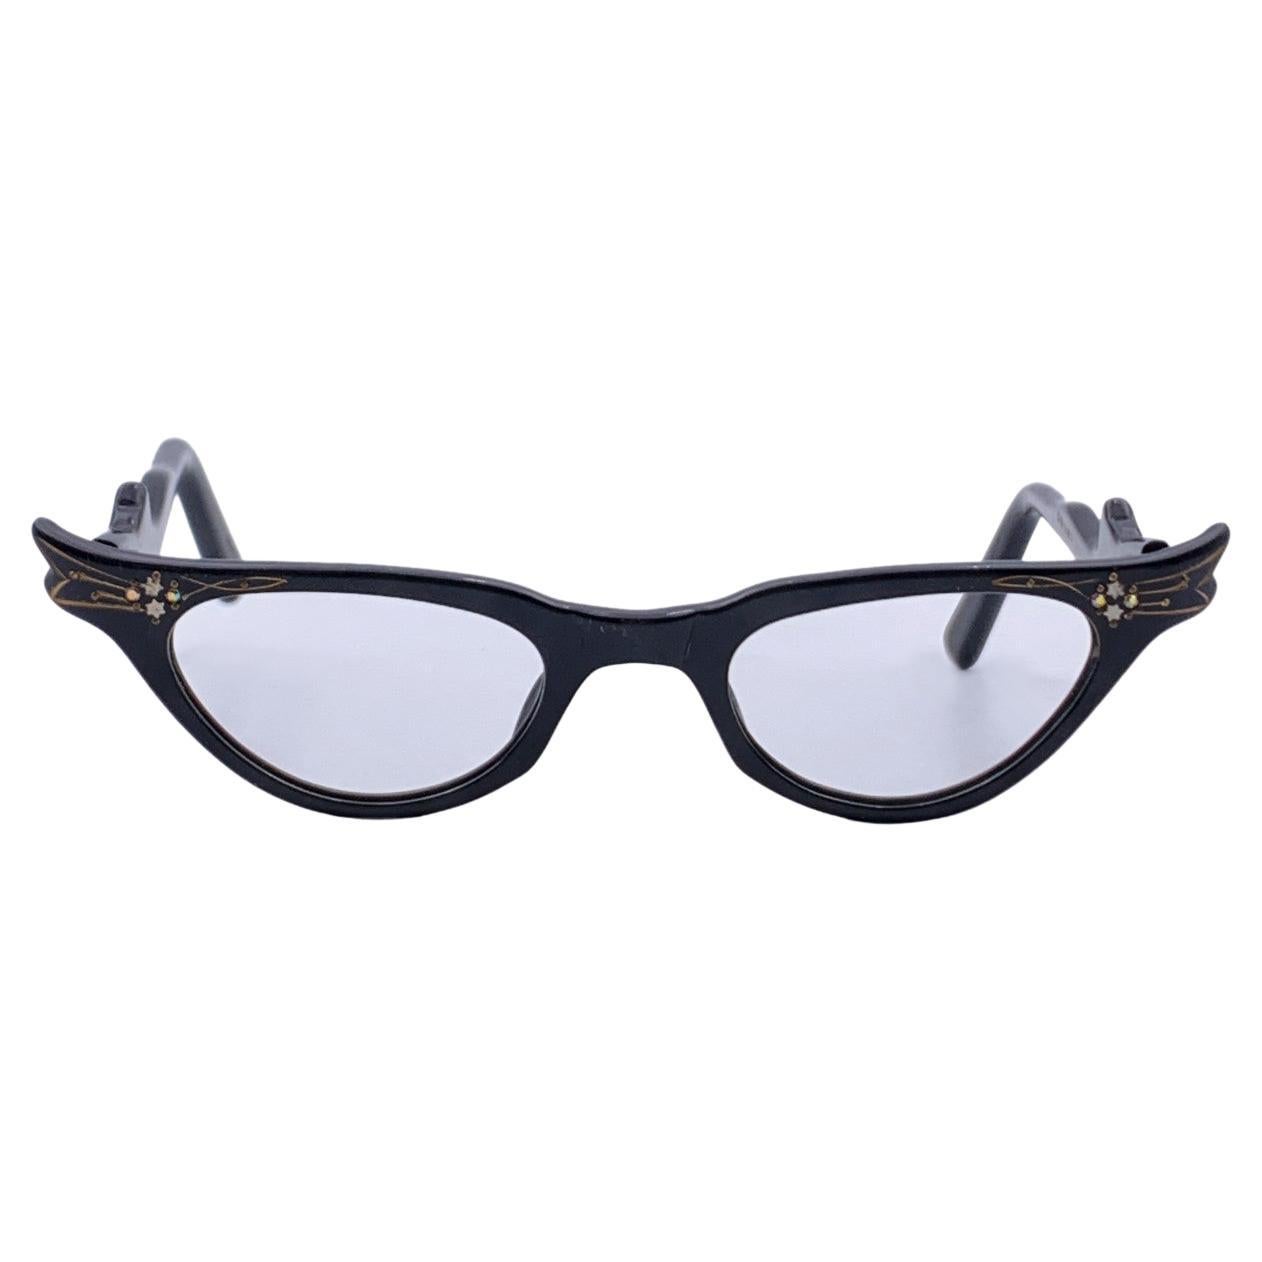 Vintage 1950s Black Cat-Eye Eyeglasses 44-22 Crystals Frame